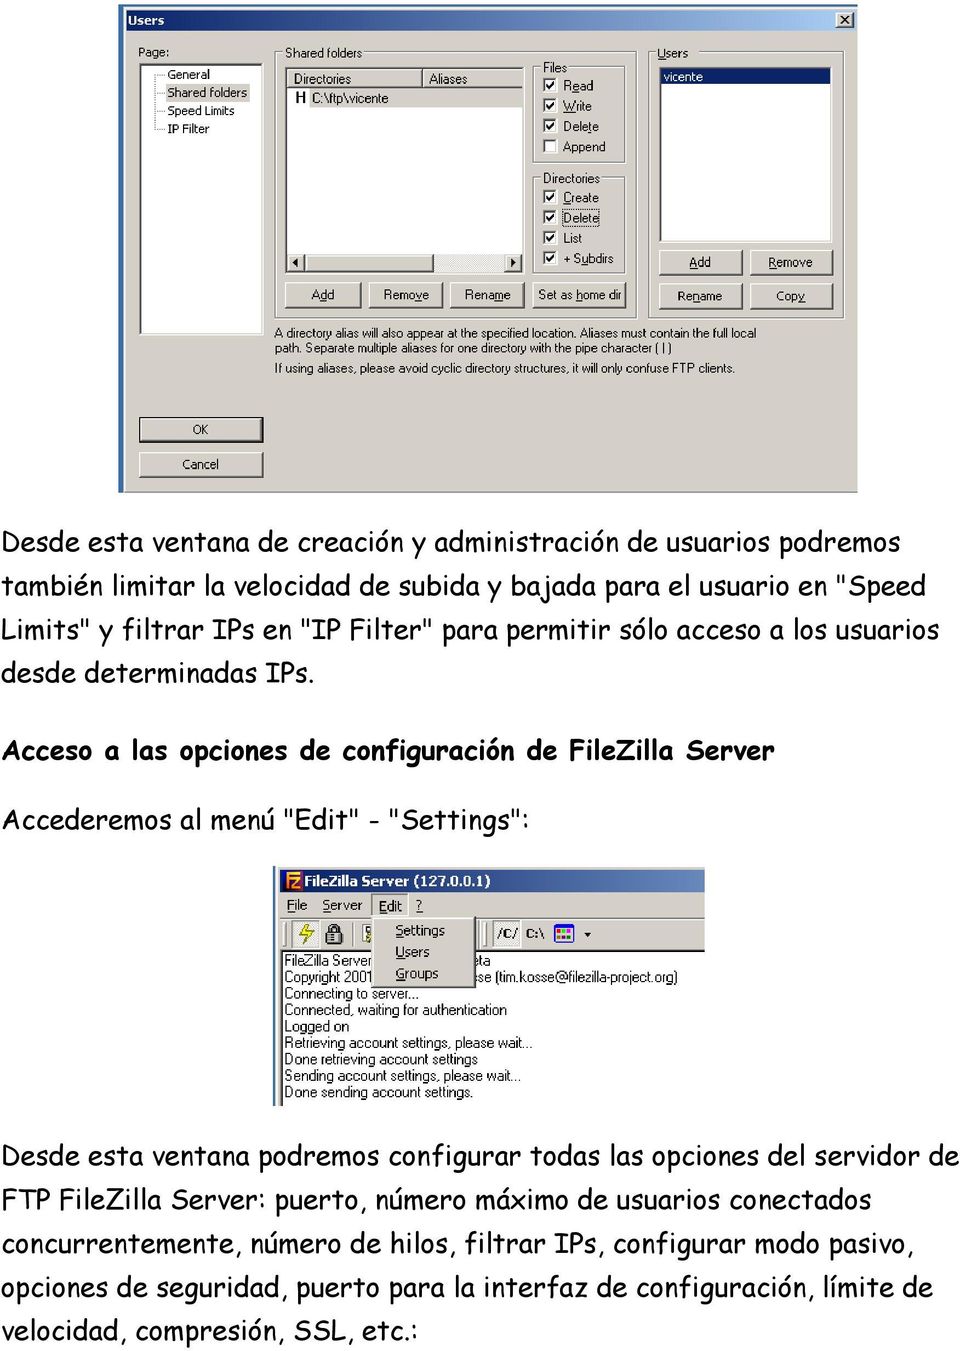 Acceso a las opciones de configuración de FileZilla Server Accederemos al menú "Edit" - "Settings": Desde esta ventana podremos configurar todas las opciones del